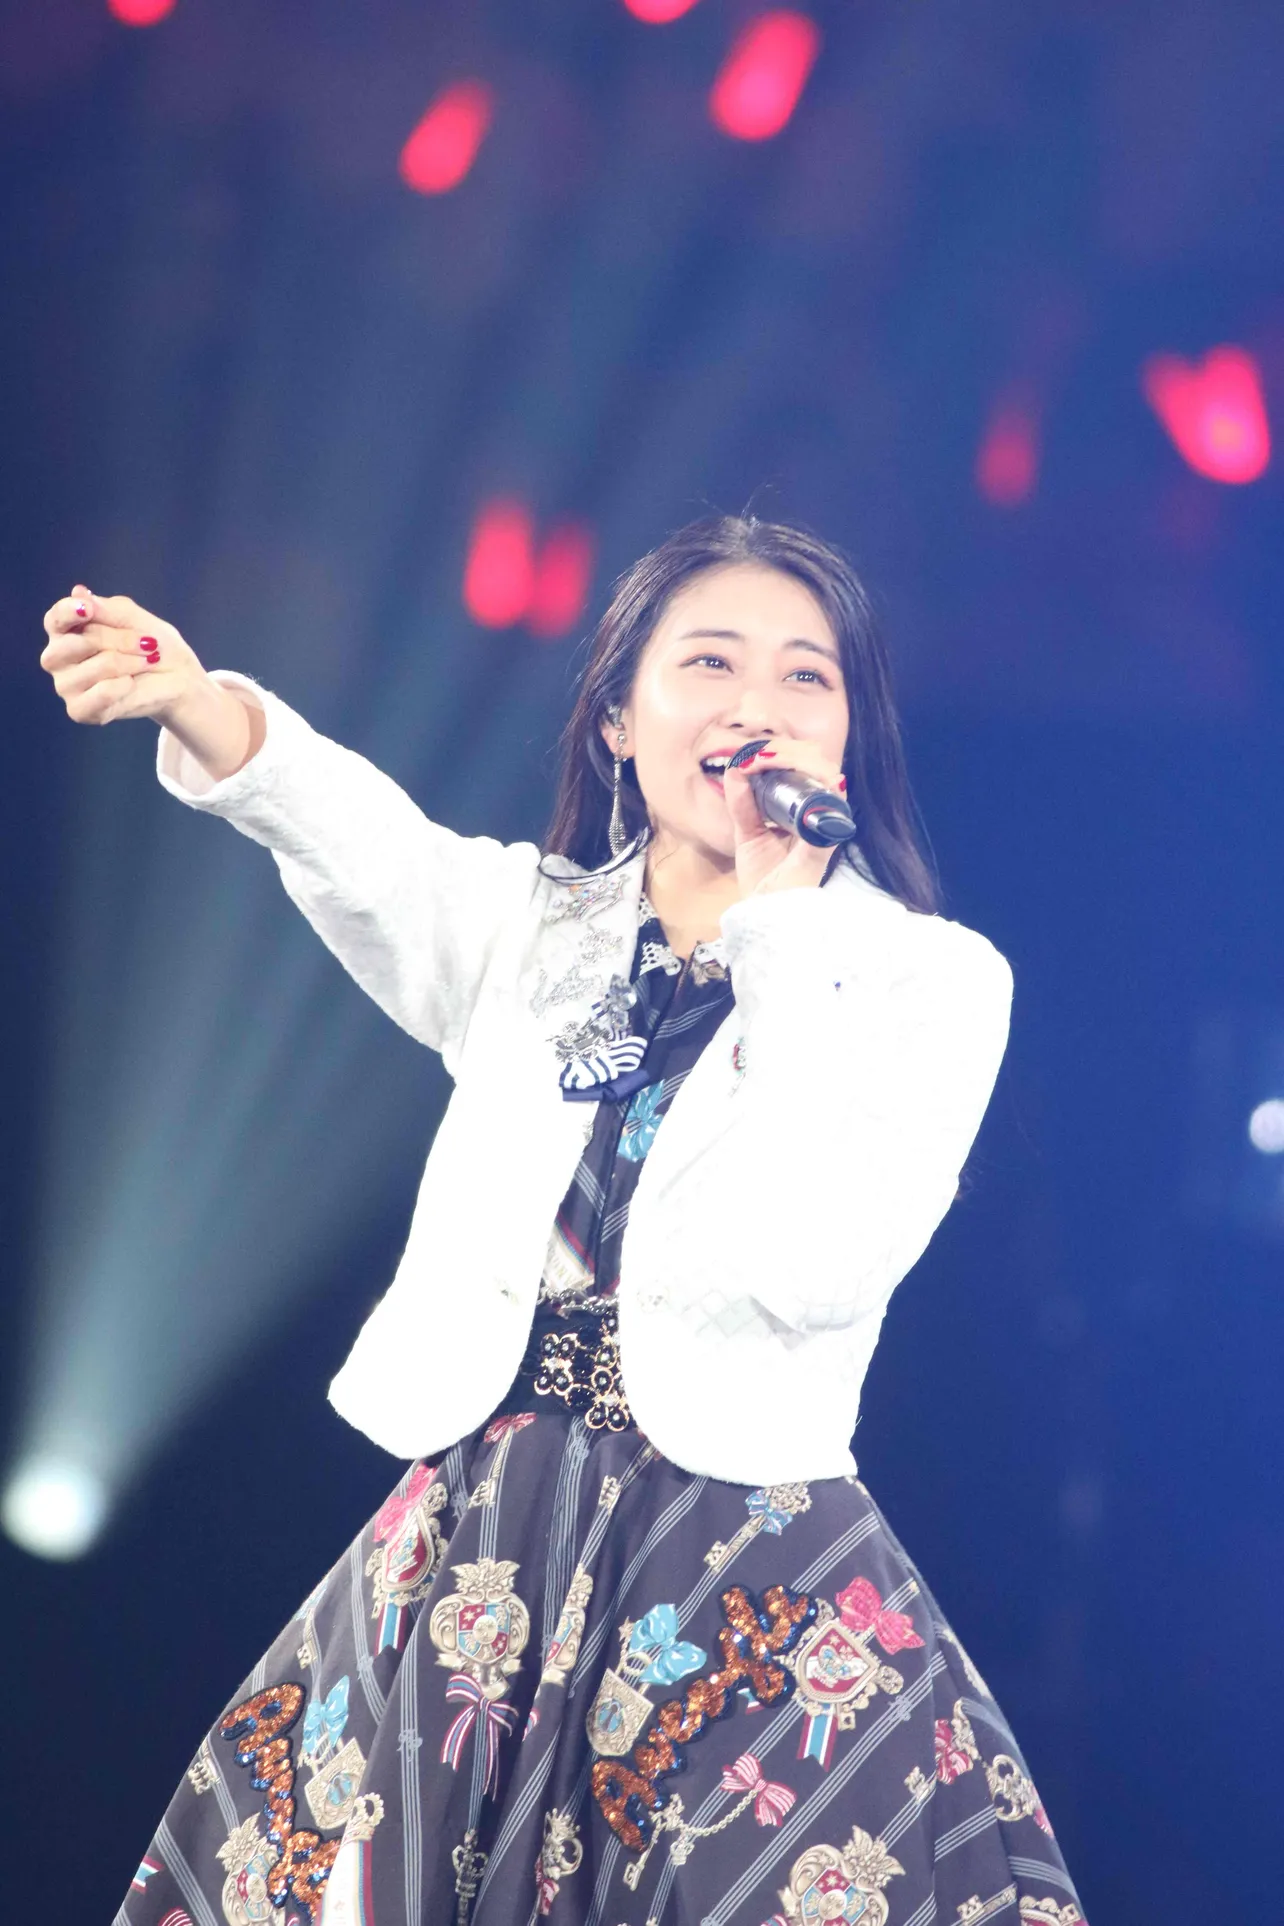 ソロで『シューティングスター』を歌う和田彩花。同曲が収録されているファーストアルバムの発売当時（2010年）のような少女の笑顔が